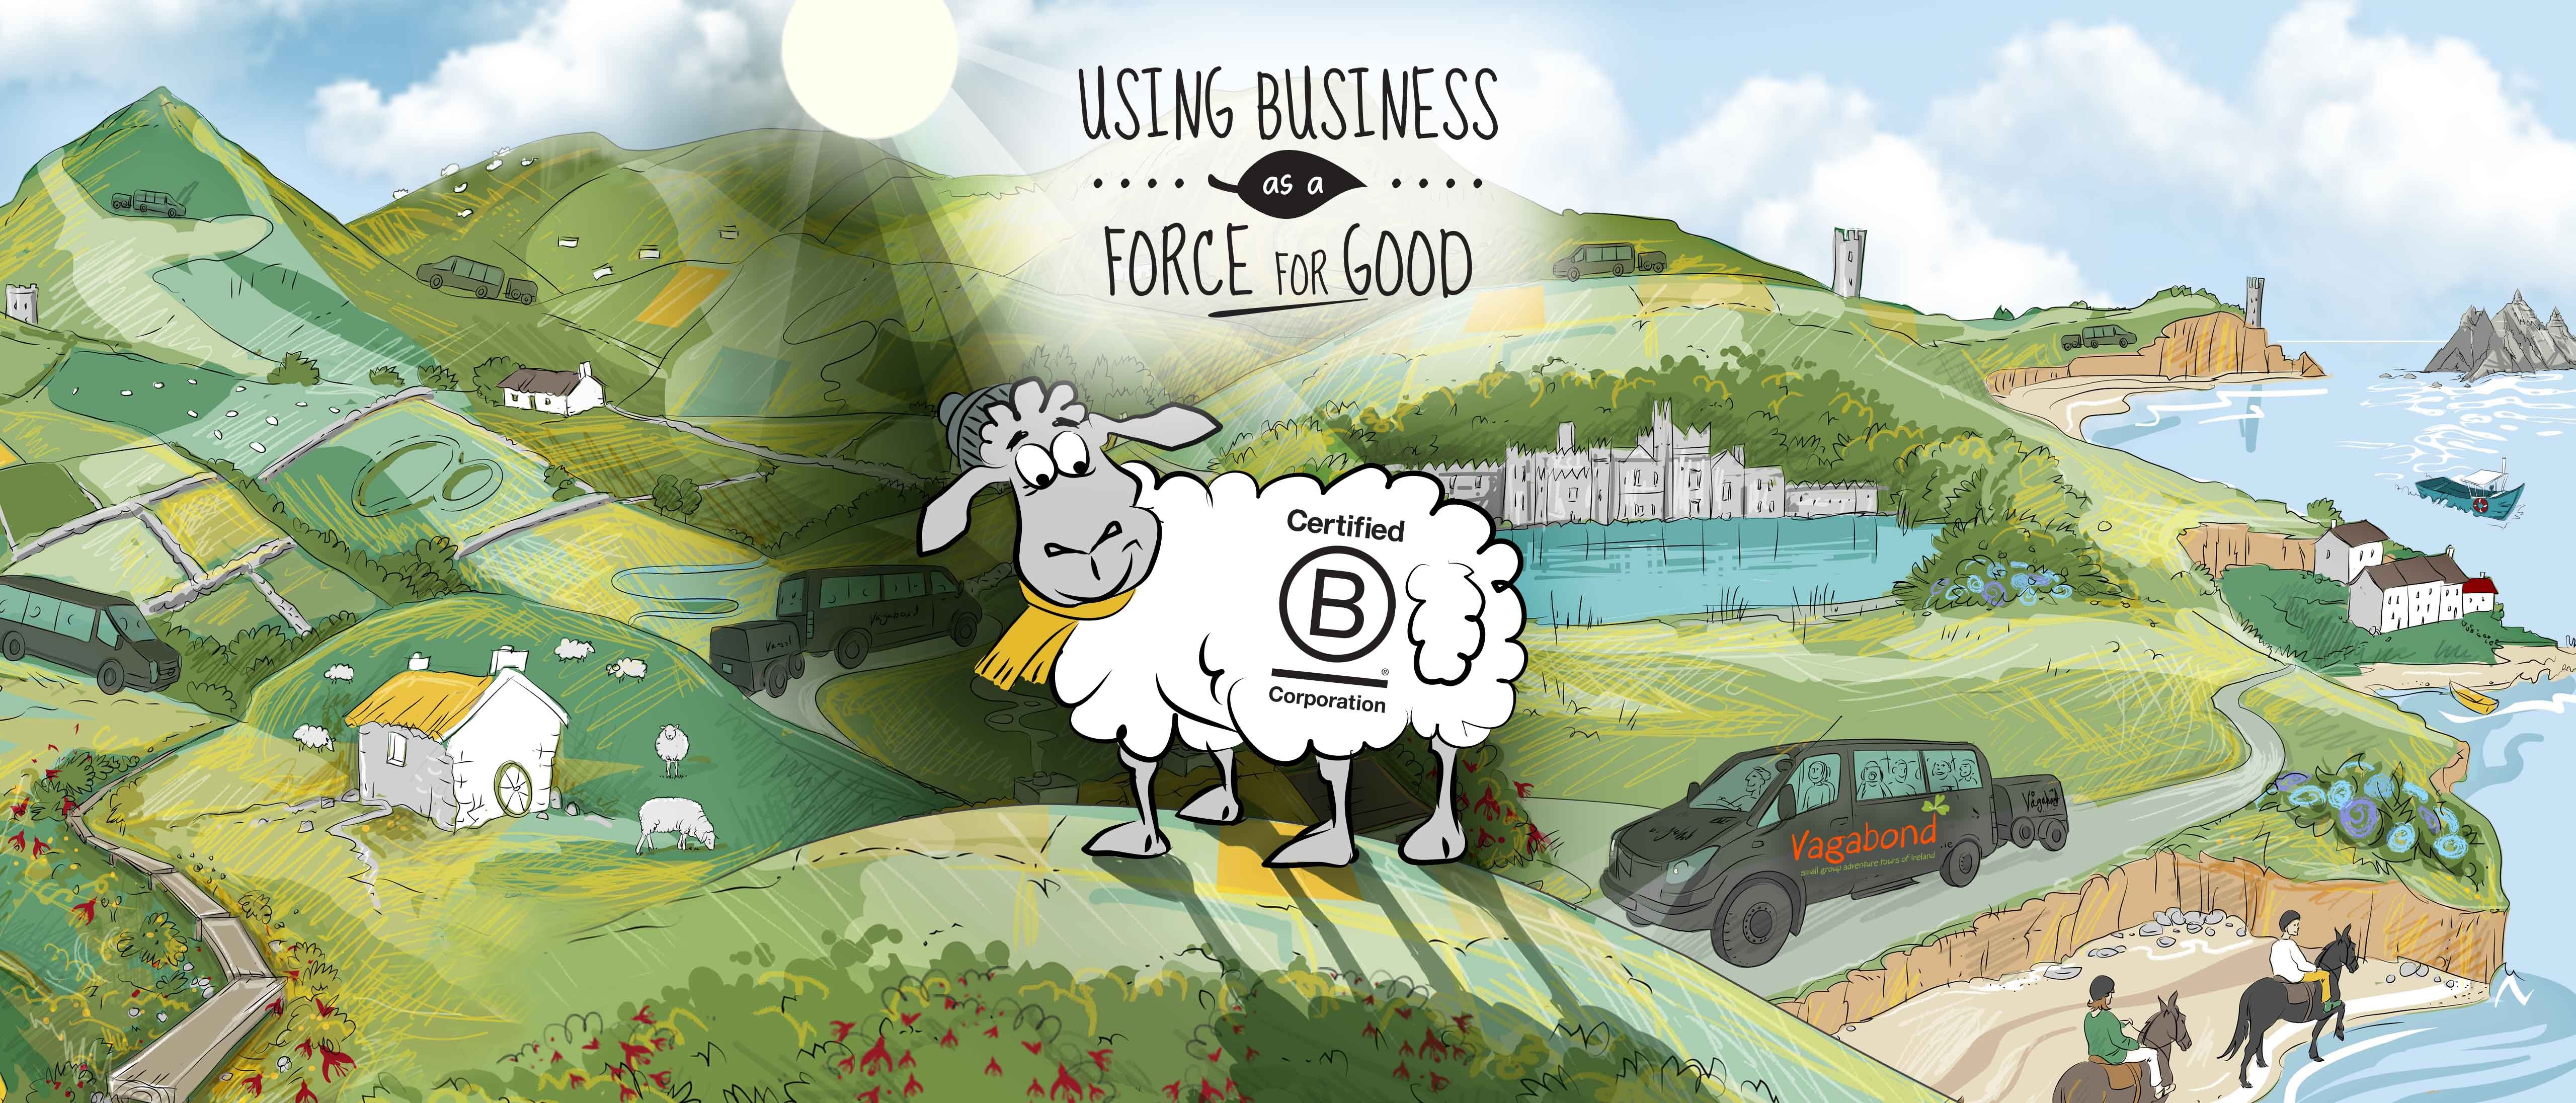 B Corp logo on animated sheep and Ireland background